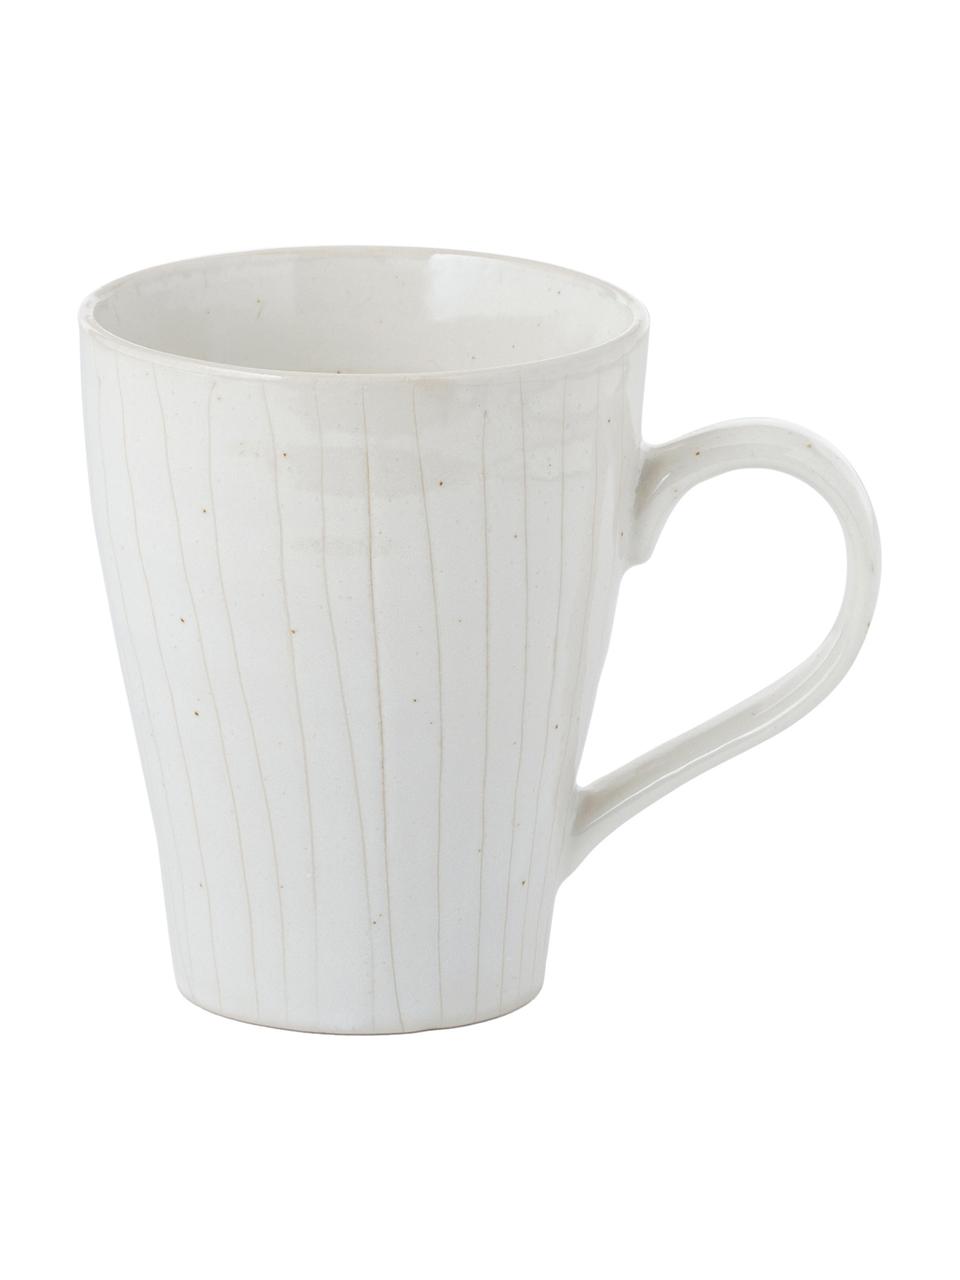 Handgemachte Tassen Copenhagen mit feinen Streifen, 6 Stück, Steingut, Elfenbein mit feinen hellbeigen Streifen, Ø 12 x H 11 cm